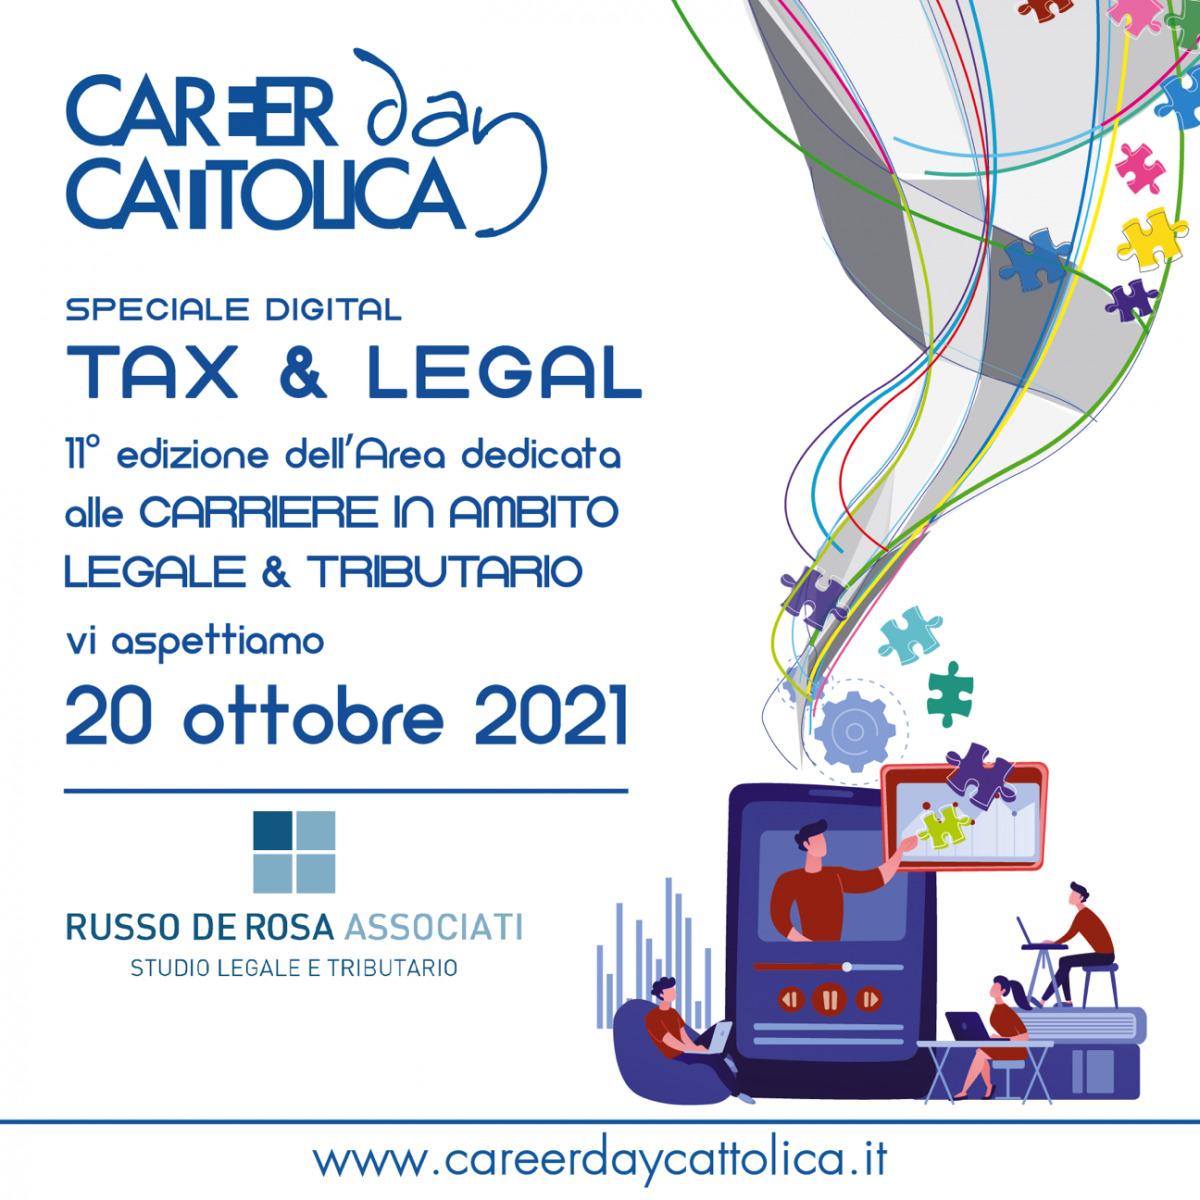 Career Day Università Cattolica del Sacro Cuore on October 20th 2021